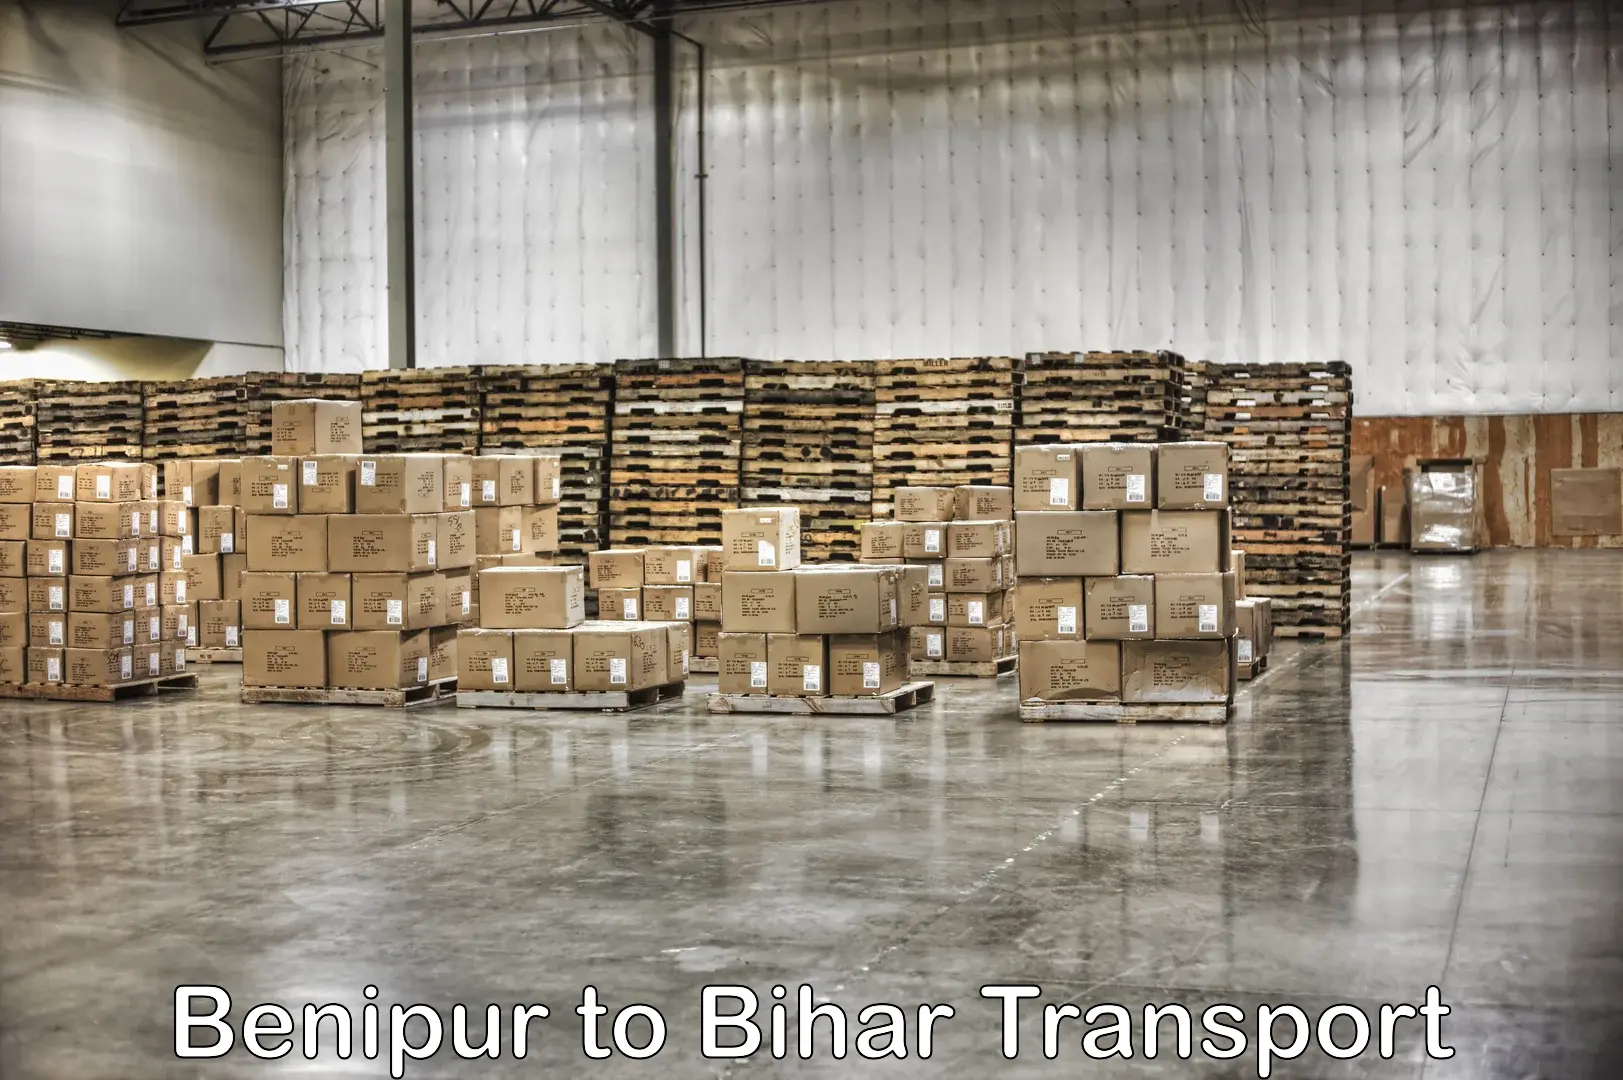 Shipping partner Benipur to Deo Aurangabad